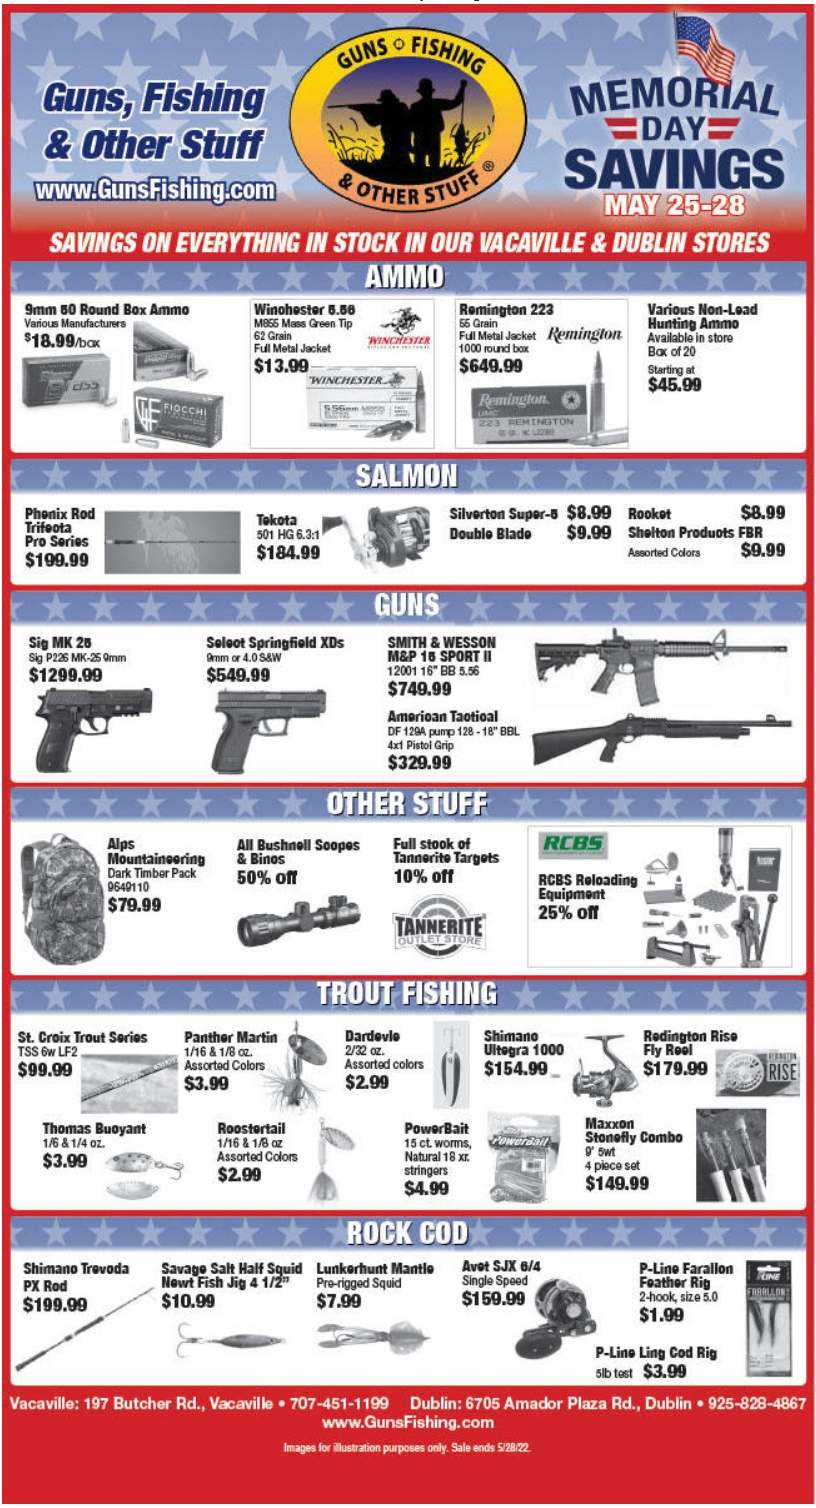 Memorial Day Savings At Guns, Fishing and Other Stuff May 25-28 2022 poster